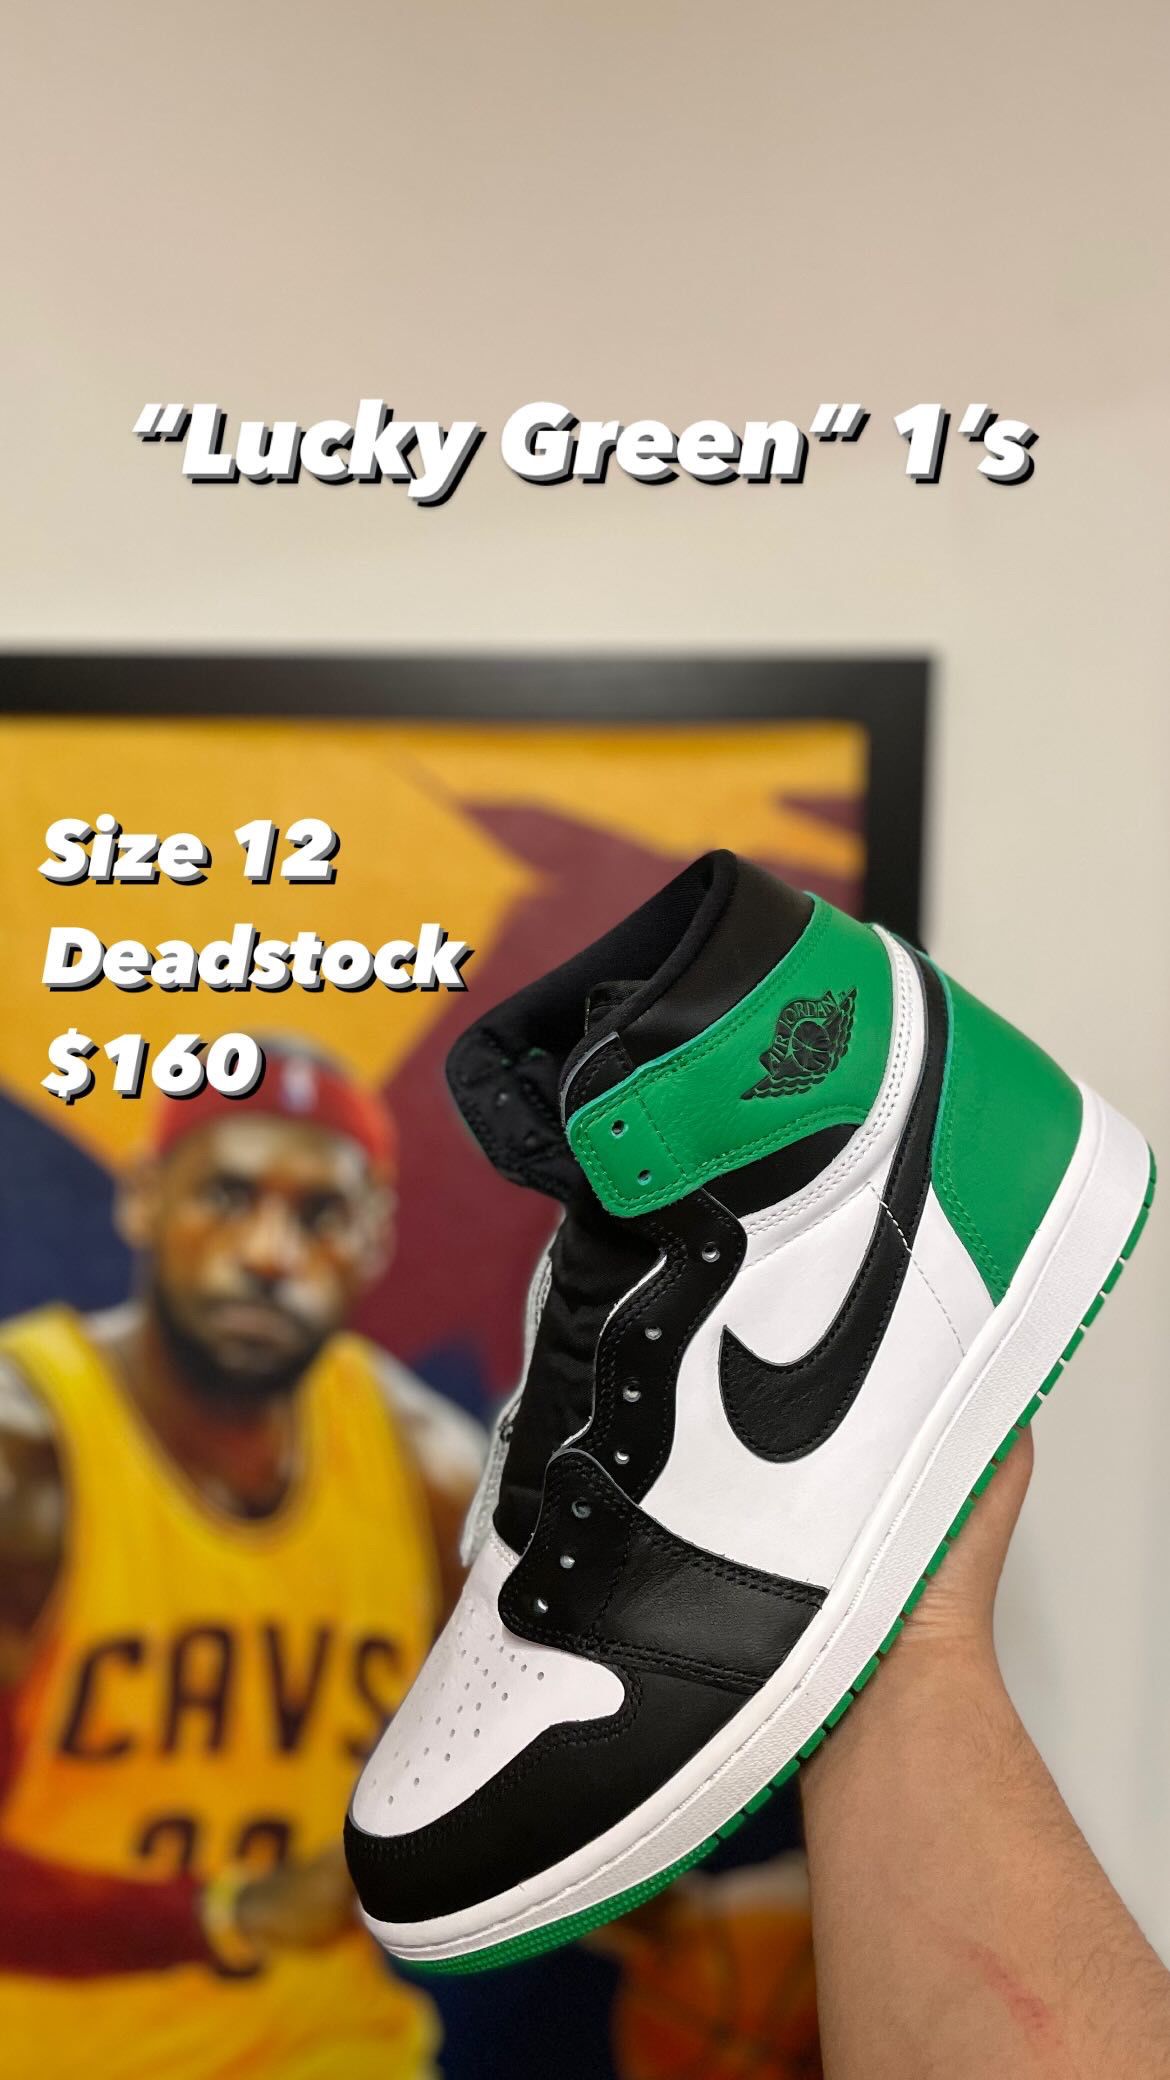 Air Jordan 1 “Lucky green” size 12